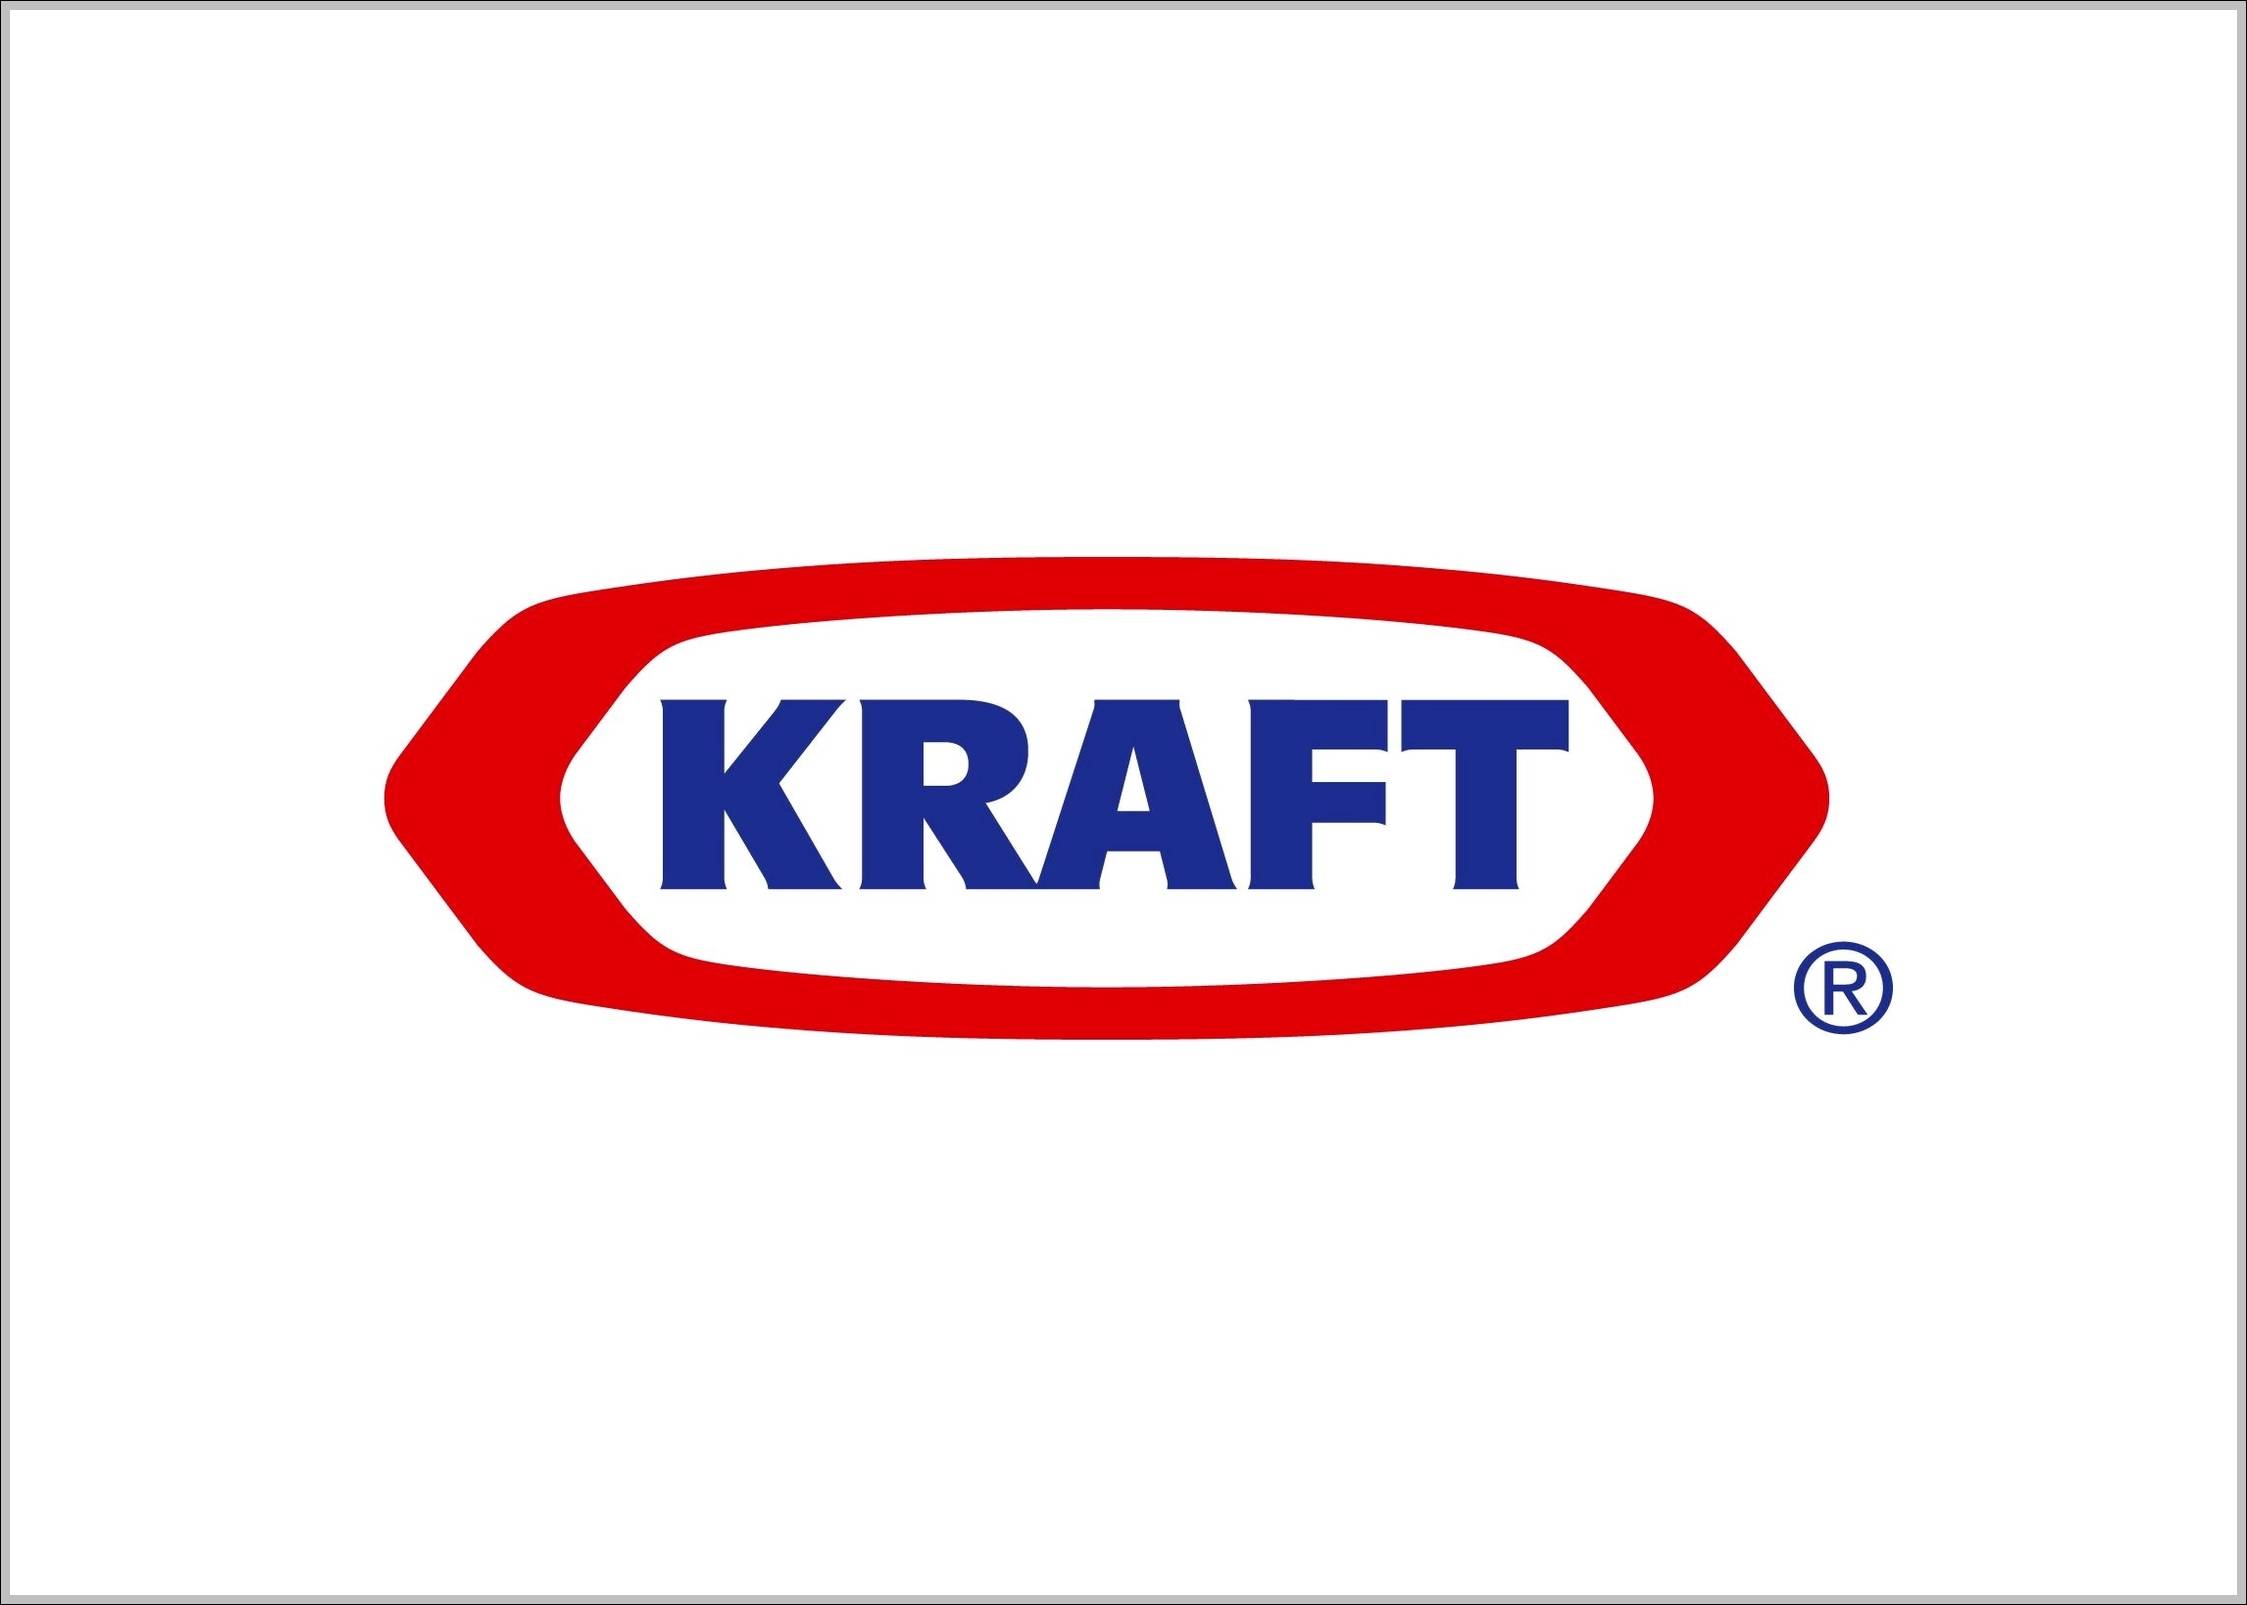 Kraft logo old